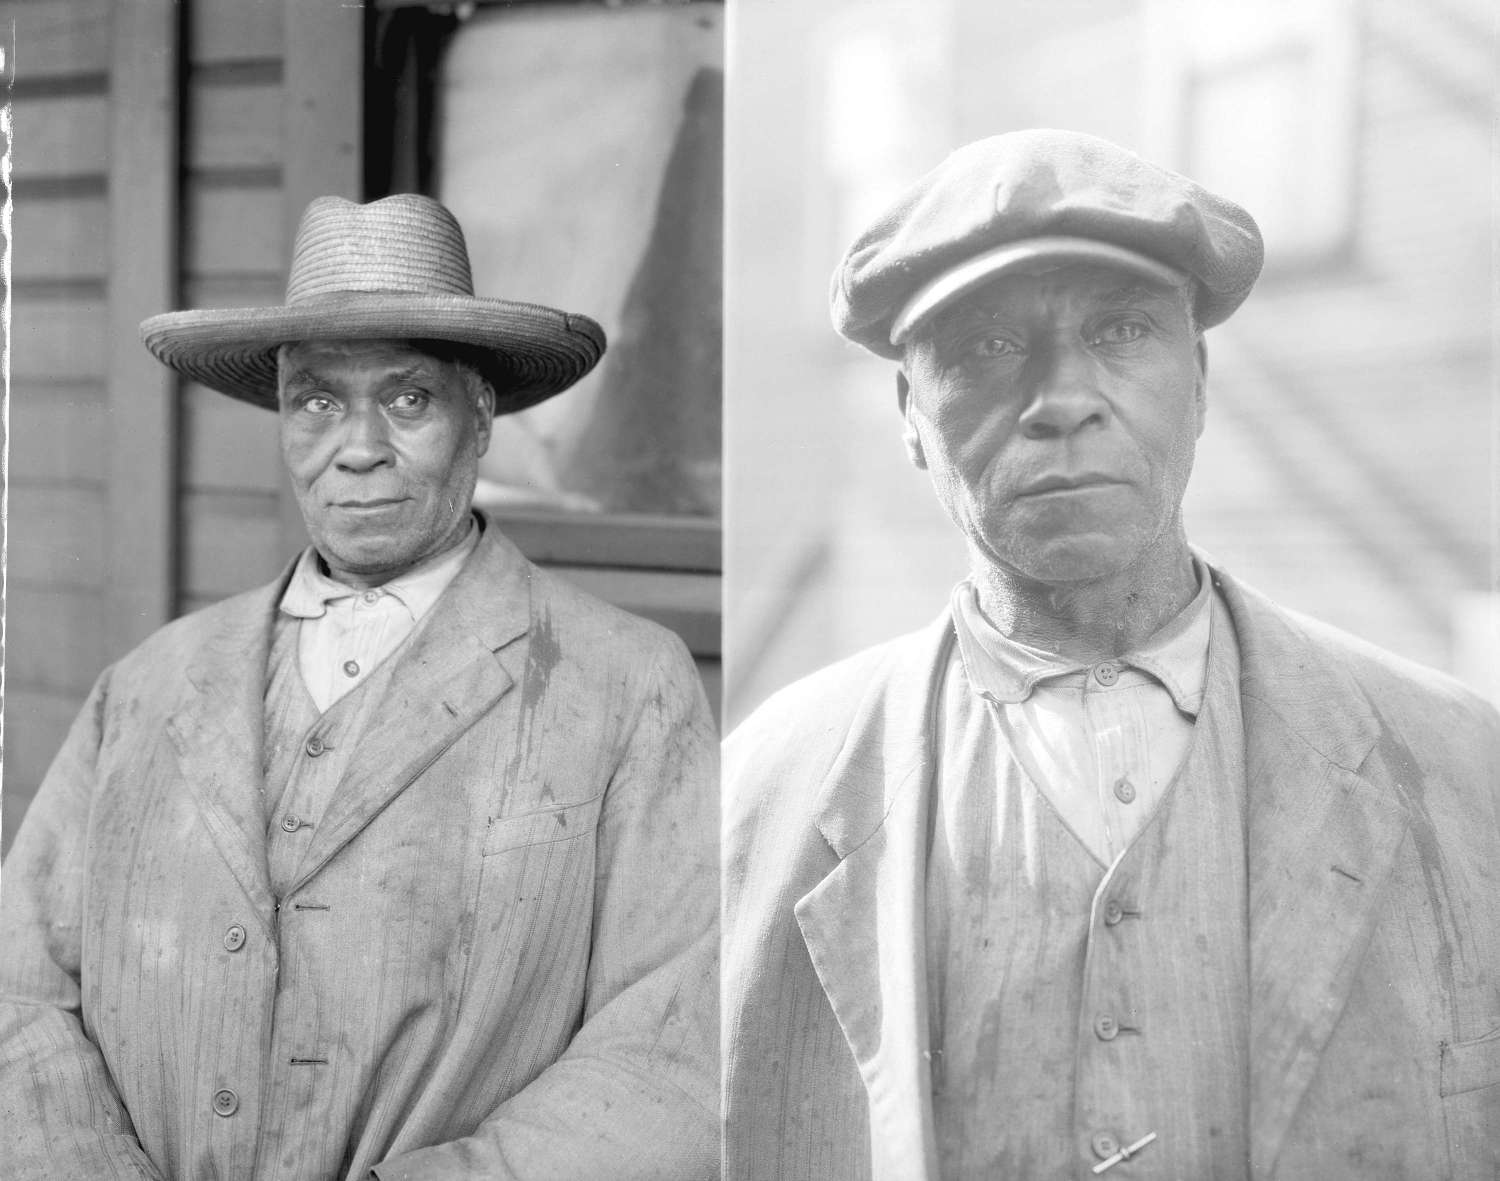 Image en noir et blanc montrant deux portraits distincts de Fielding William Spotts Jr. debout devant sa maison.